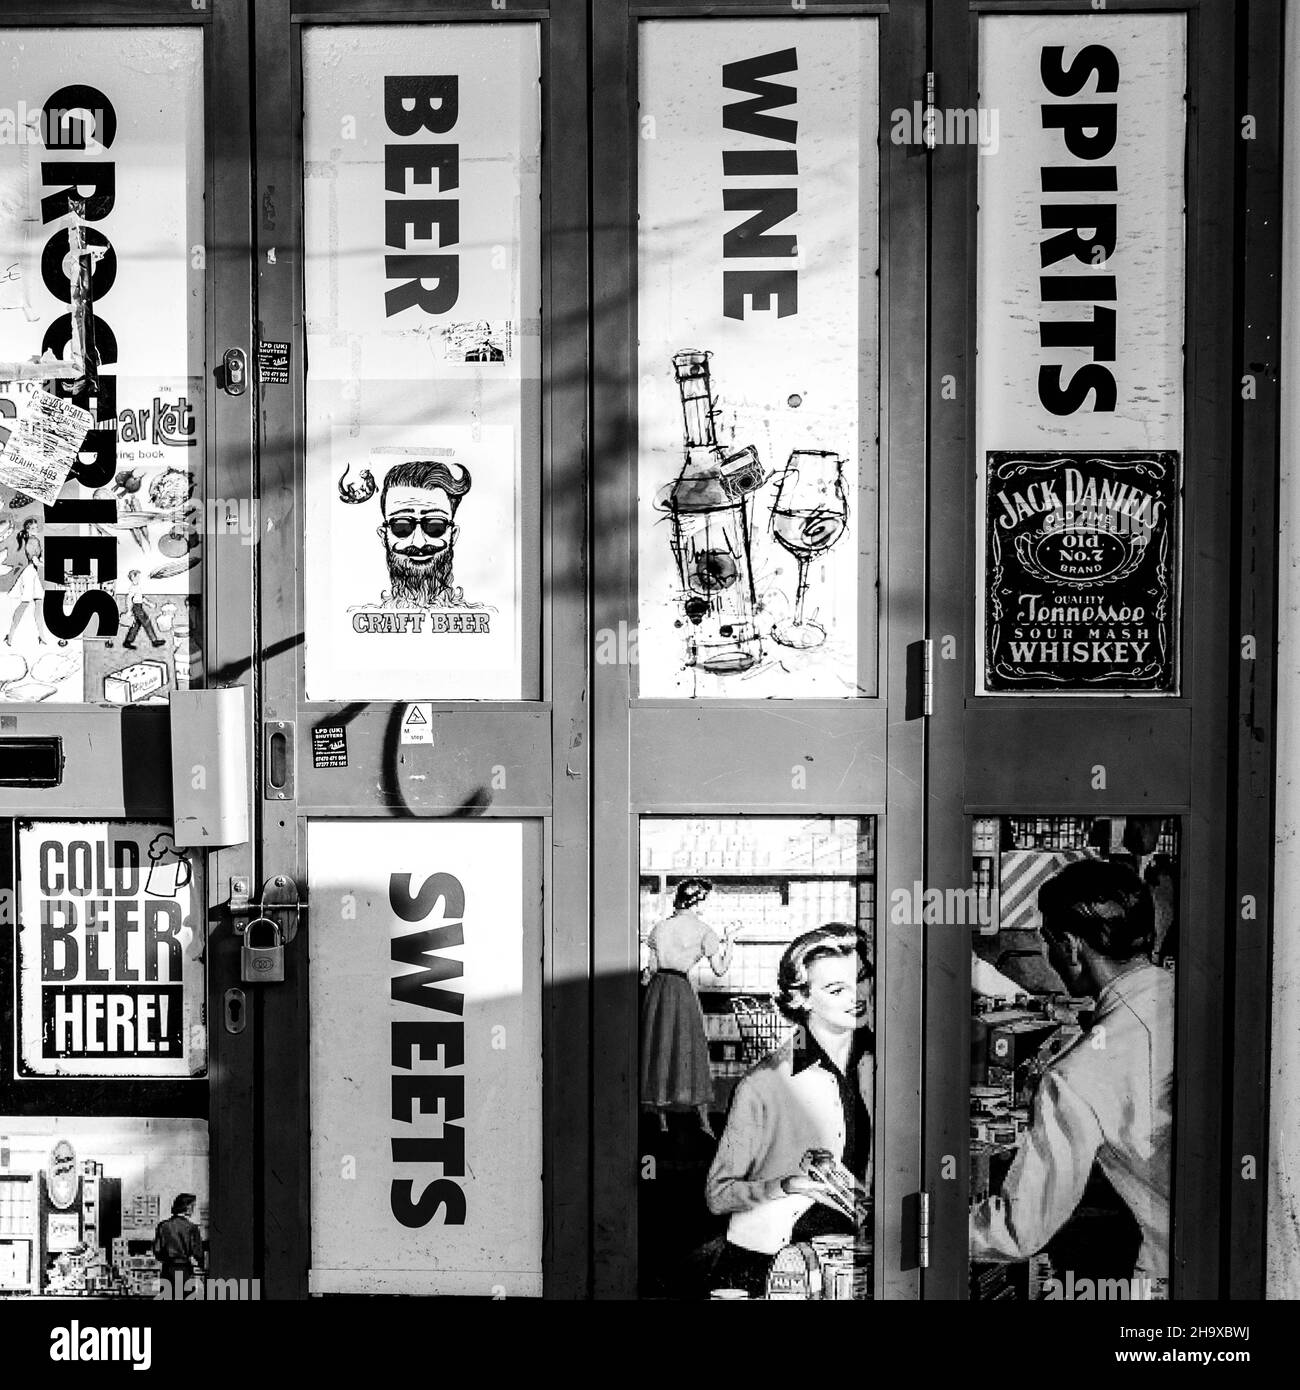 Centre de Londres Royaume-Uni novembre 21 2021, magasin de vente de boissons alcoolisées fermé ou hors licence d'entrée avec affiches publicitaires et personne Banque D'Images